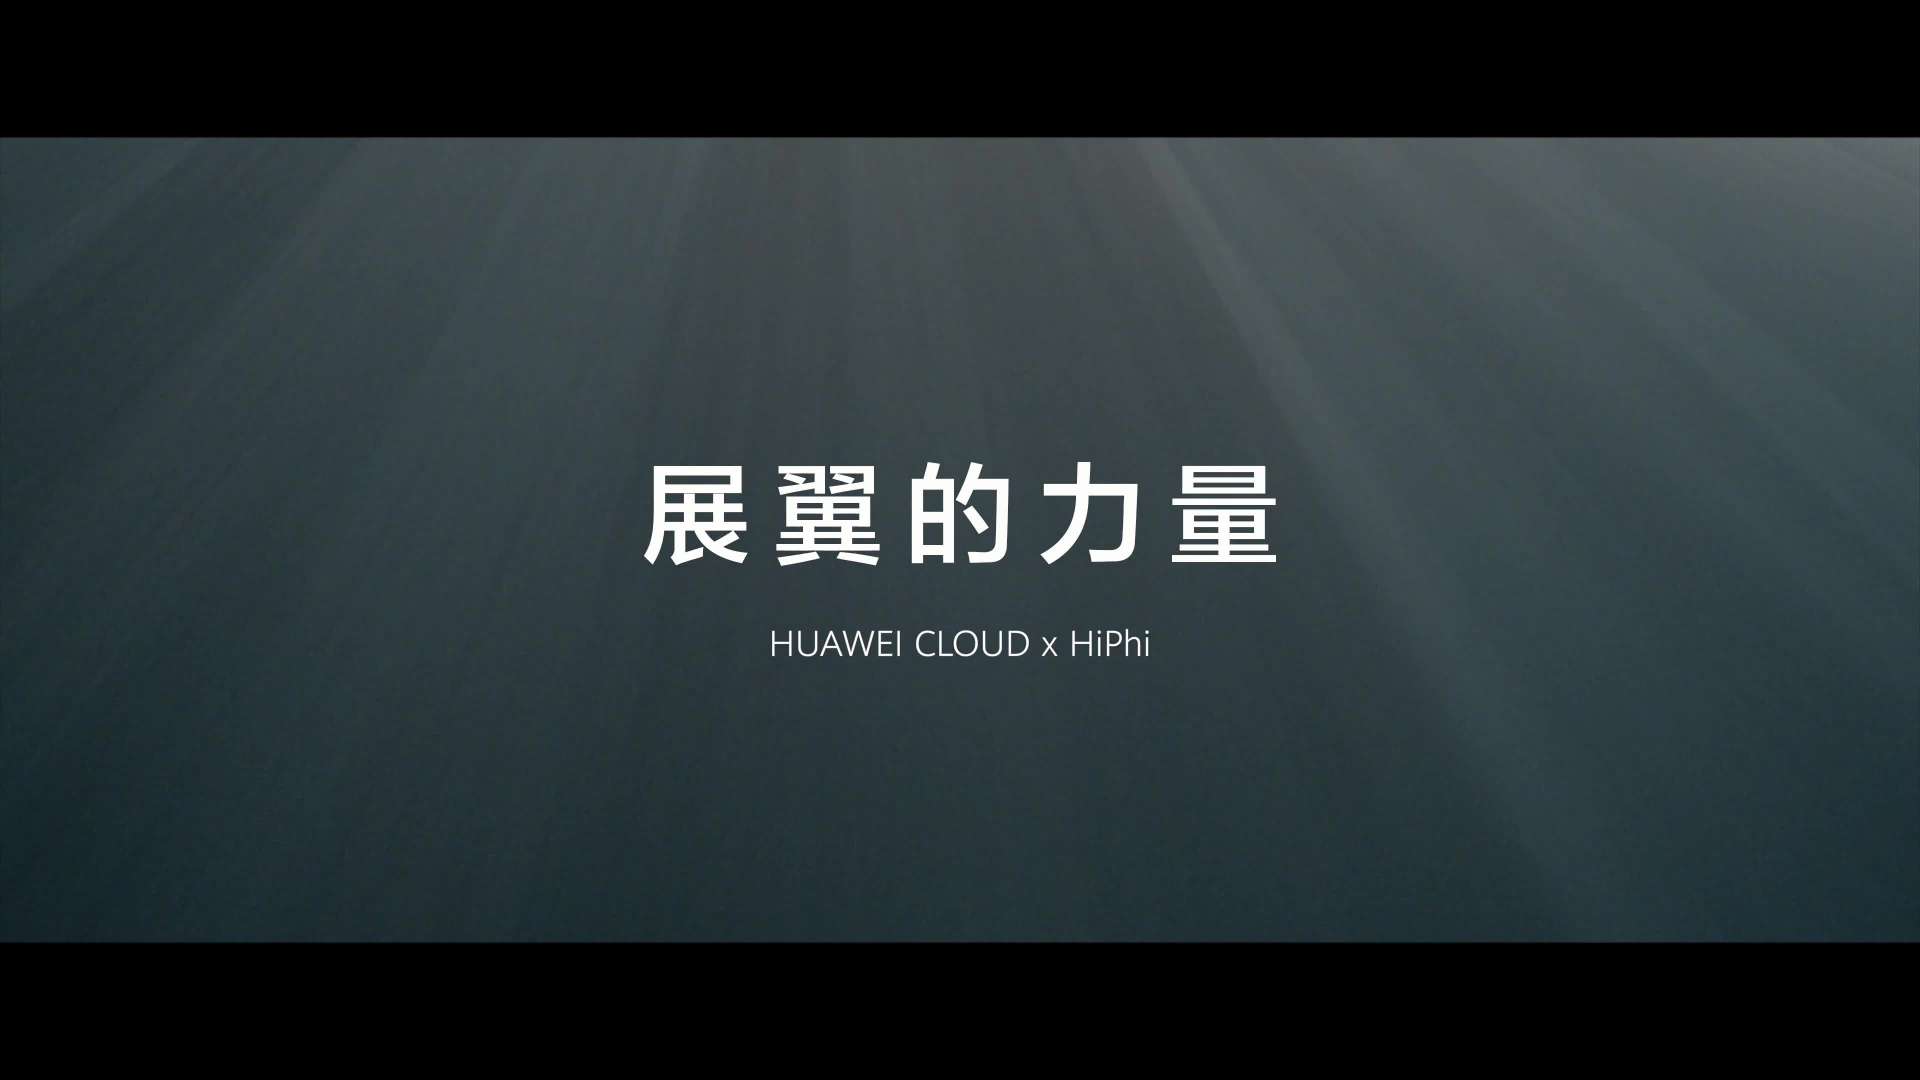 HUAWEI丨华为云X高合-「展翼的力量」